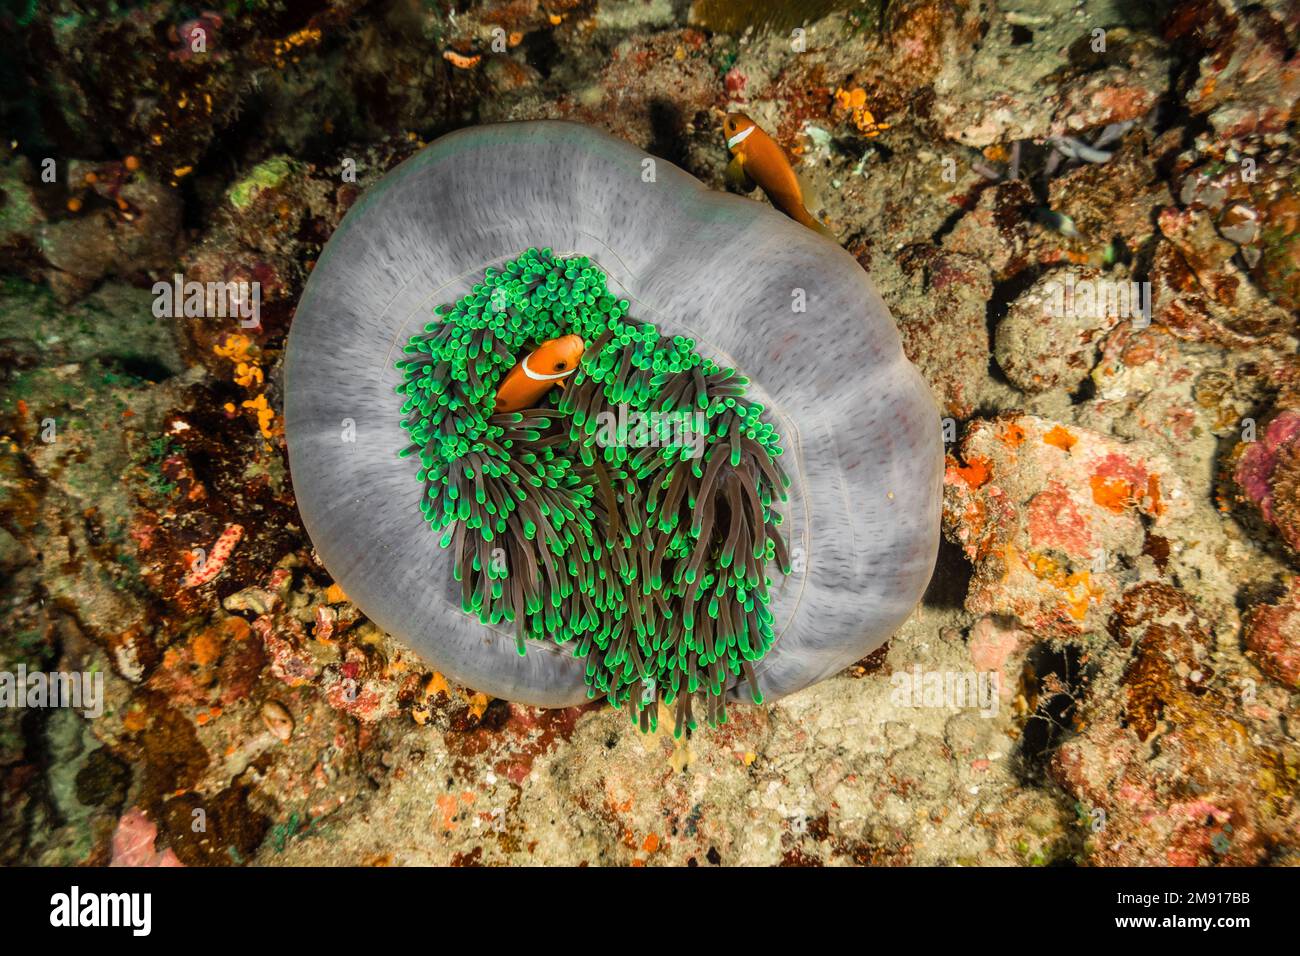 Anemone bianco verde e pesce pagliaccio Nemo, alla ricerca di fotografia subacquea nemo Foto Stock